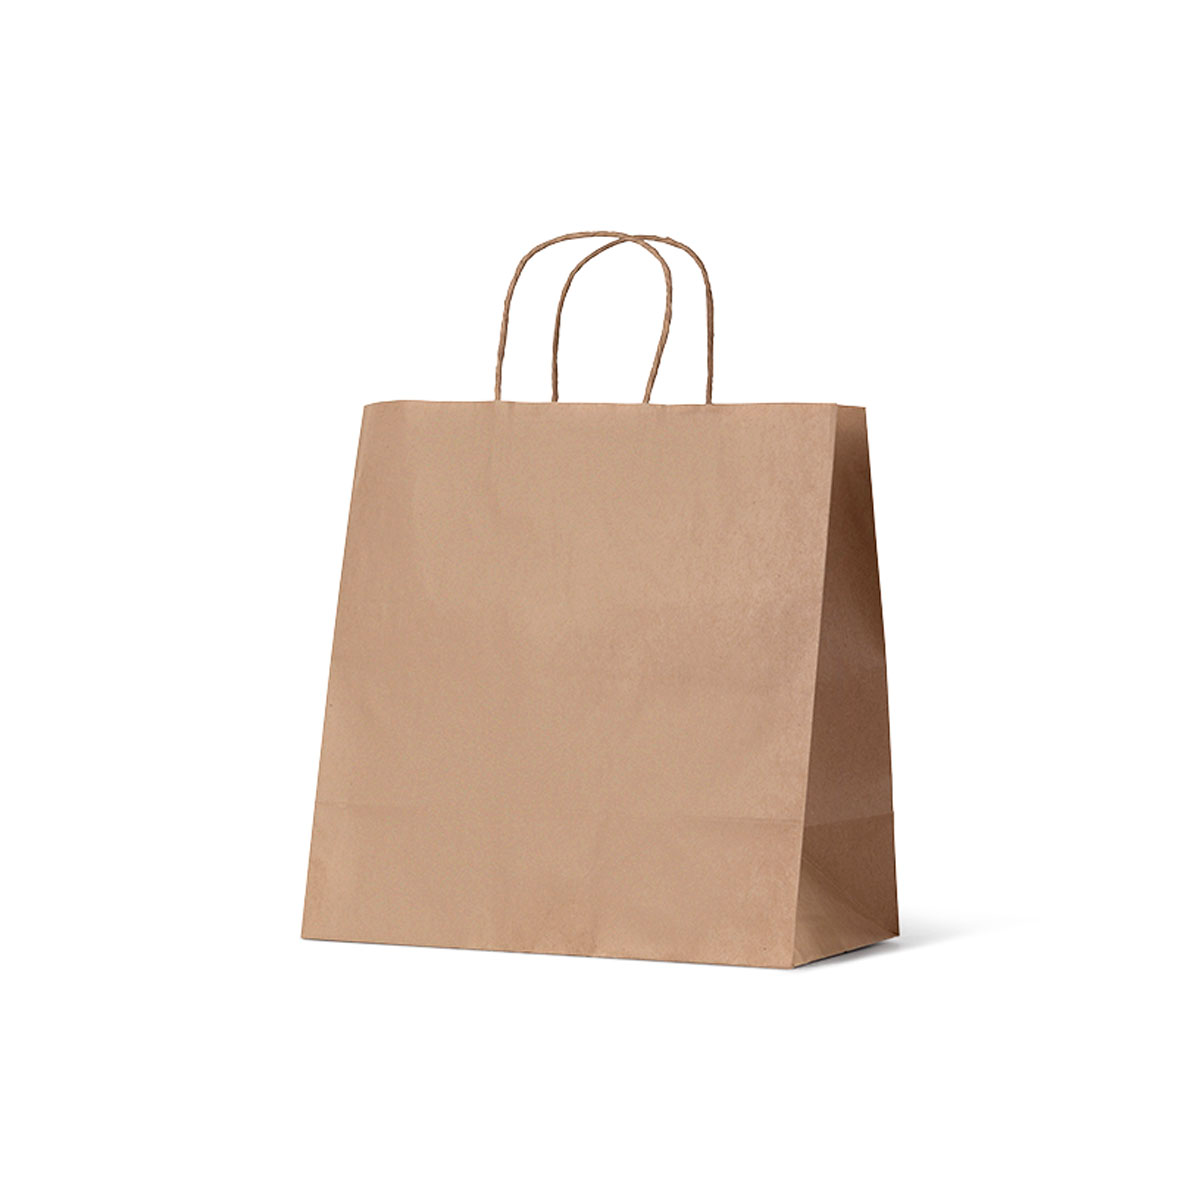 NaturalPak Takeaway Bags